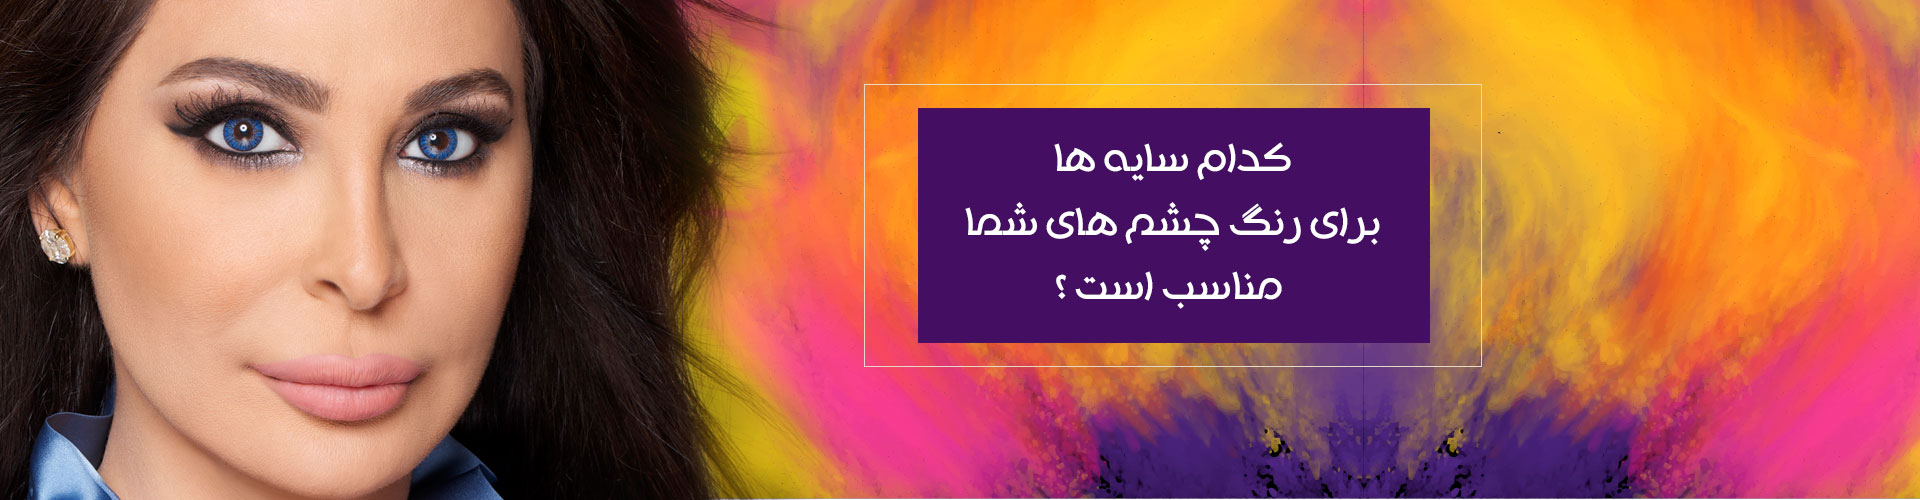 آرایش چشم با لنز رنگی خرید لنز freshlook elisa خواننده عربی لبنان